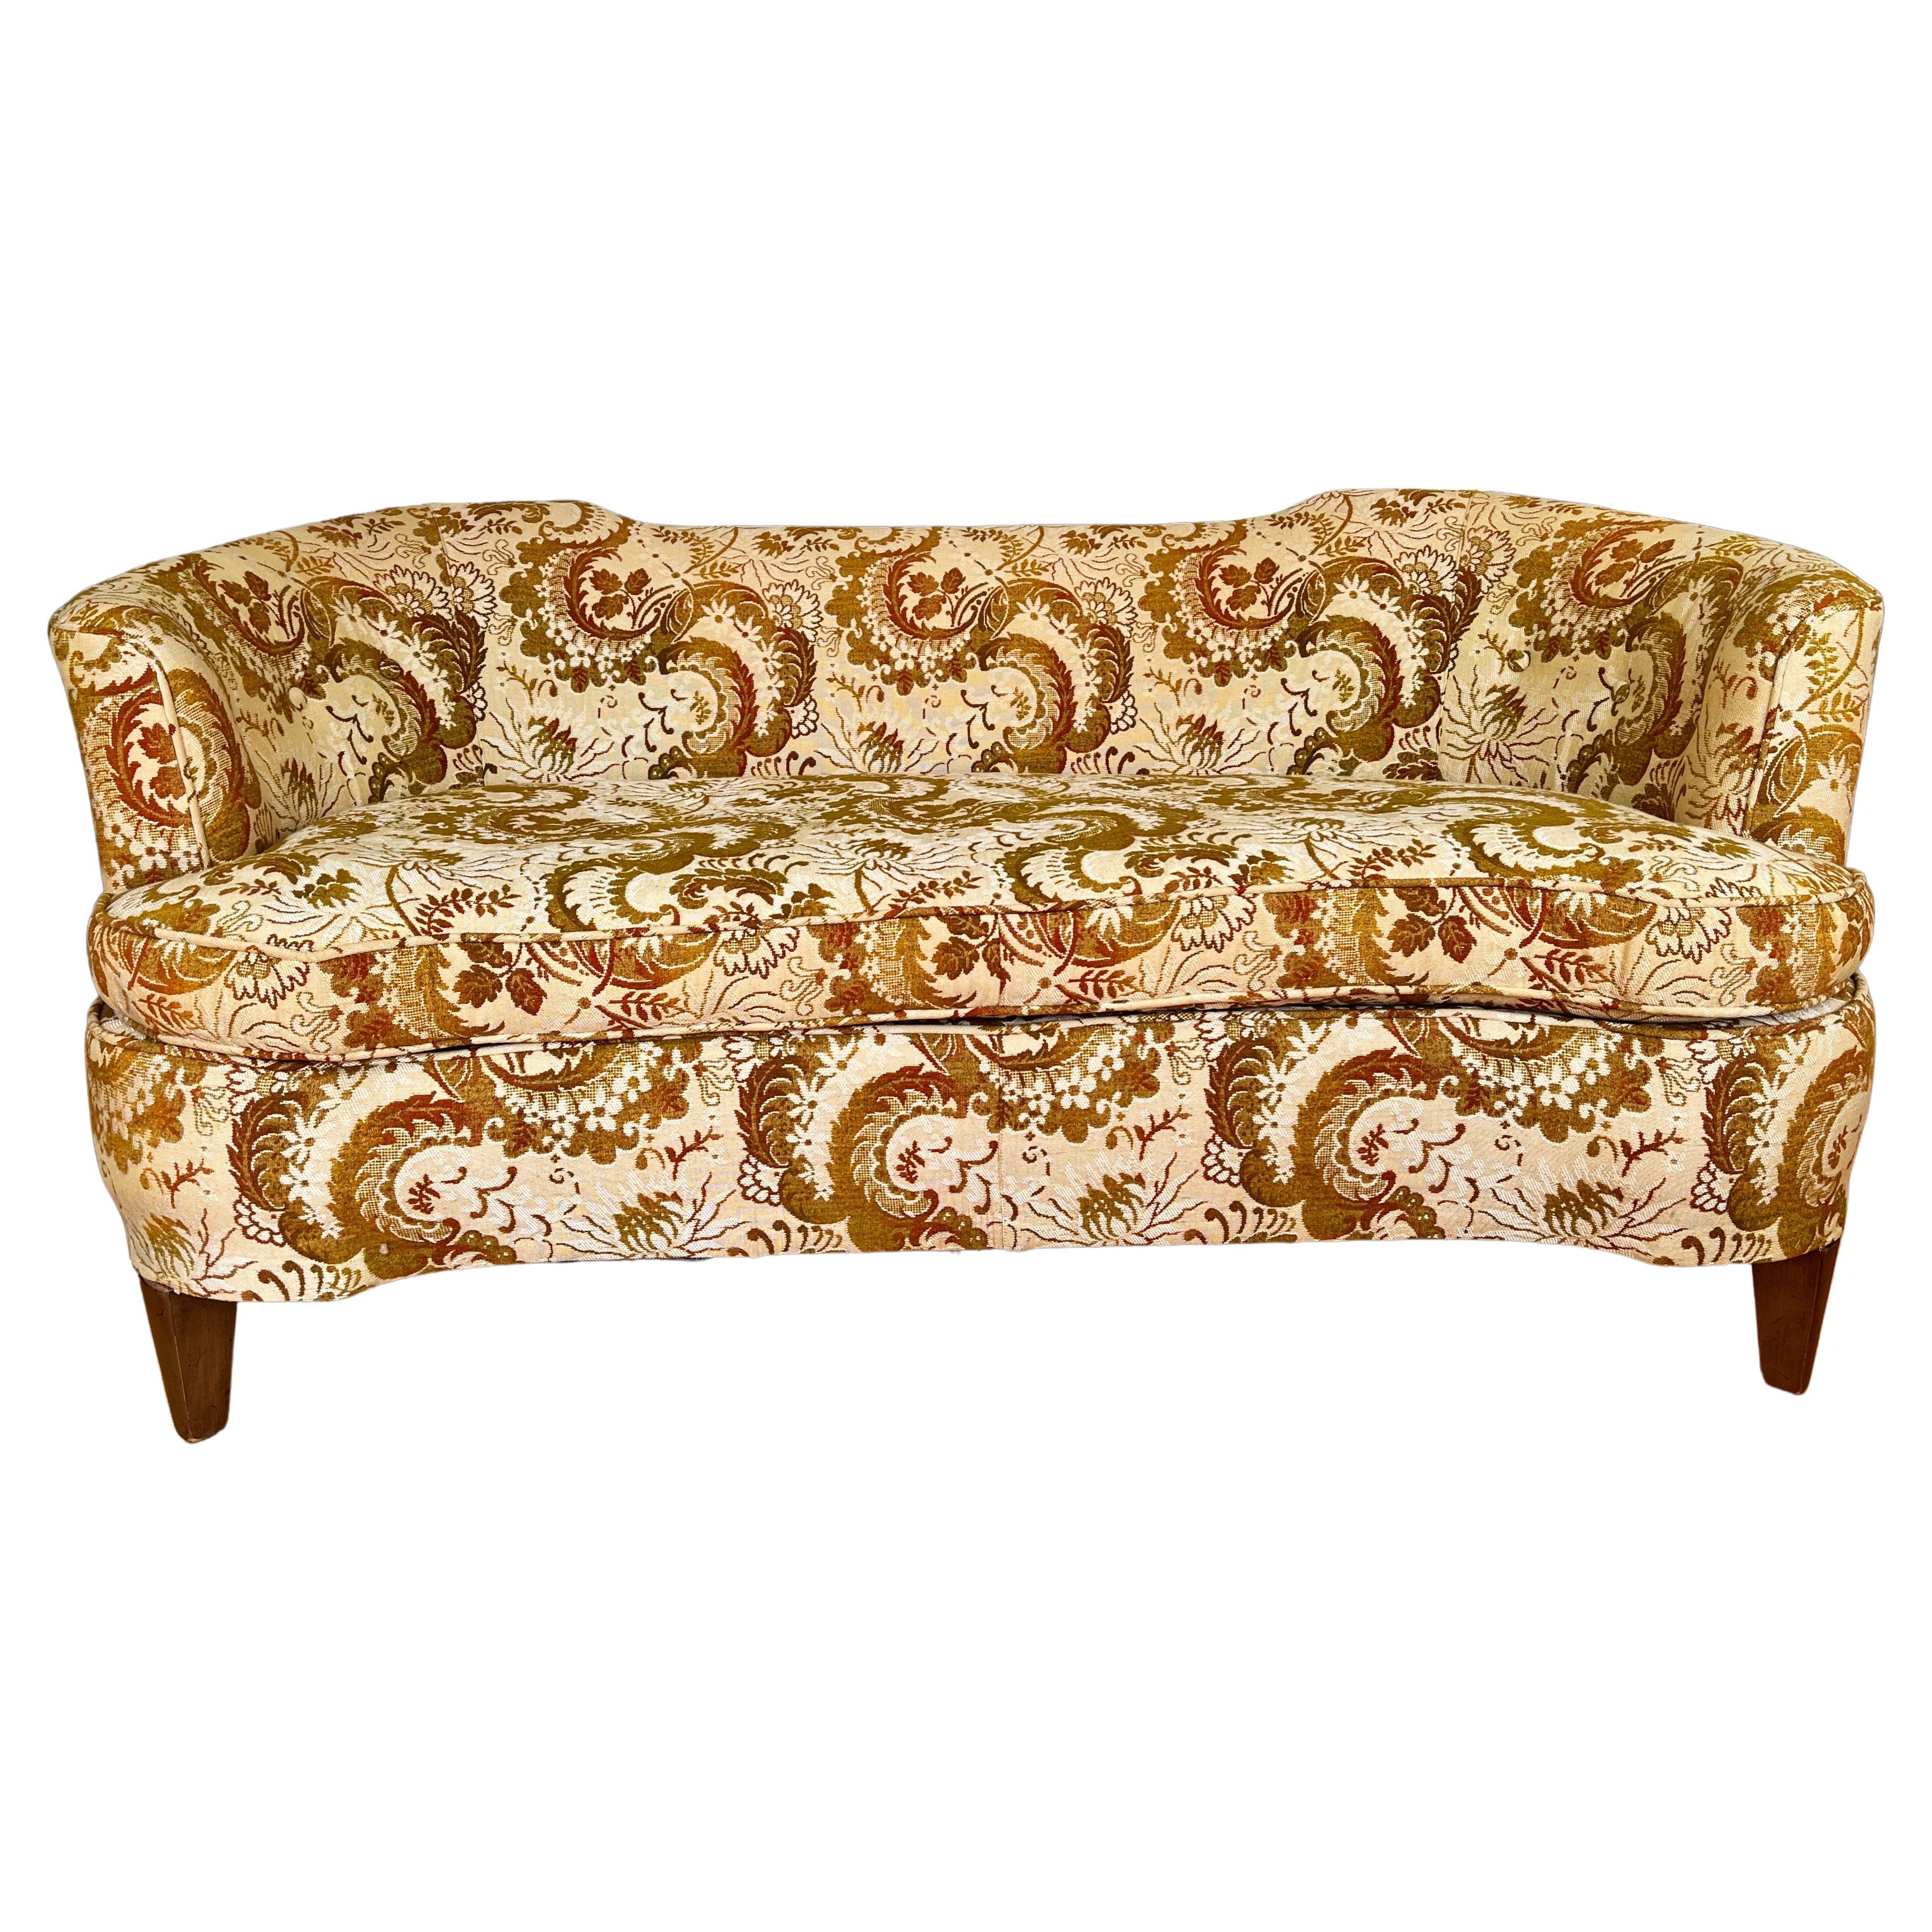 Ein kleines, gebogenes Sofa im modernen Stil mit gekerbter Rückenlehne und ausgeprägten Designelementen wie beim Sofa Adelina; Edward Wormley für Dunbar bei Baker. Merkmale: Floral Damast Polsterung und einzelne lose Kissen. Das Sofa ist ein